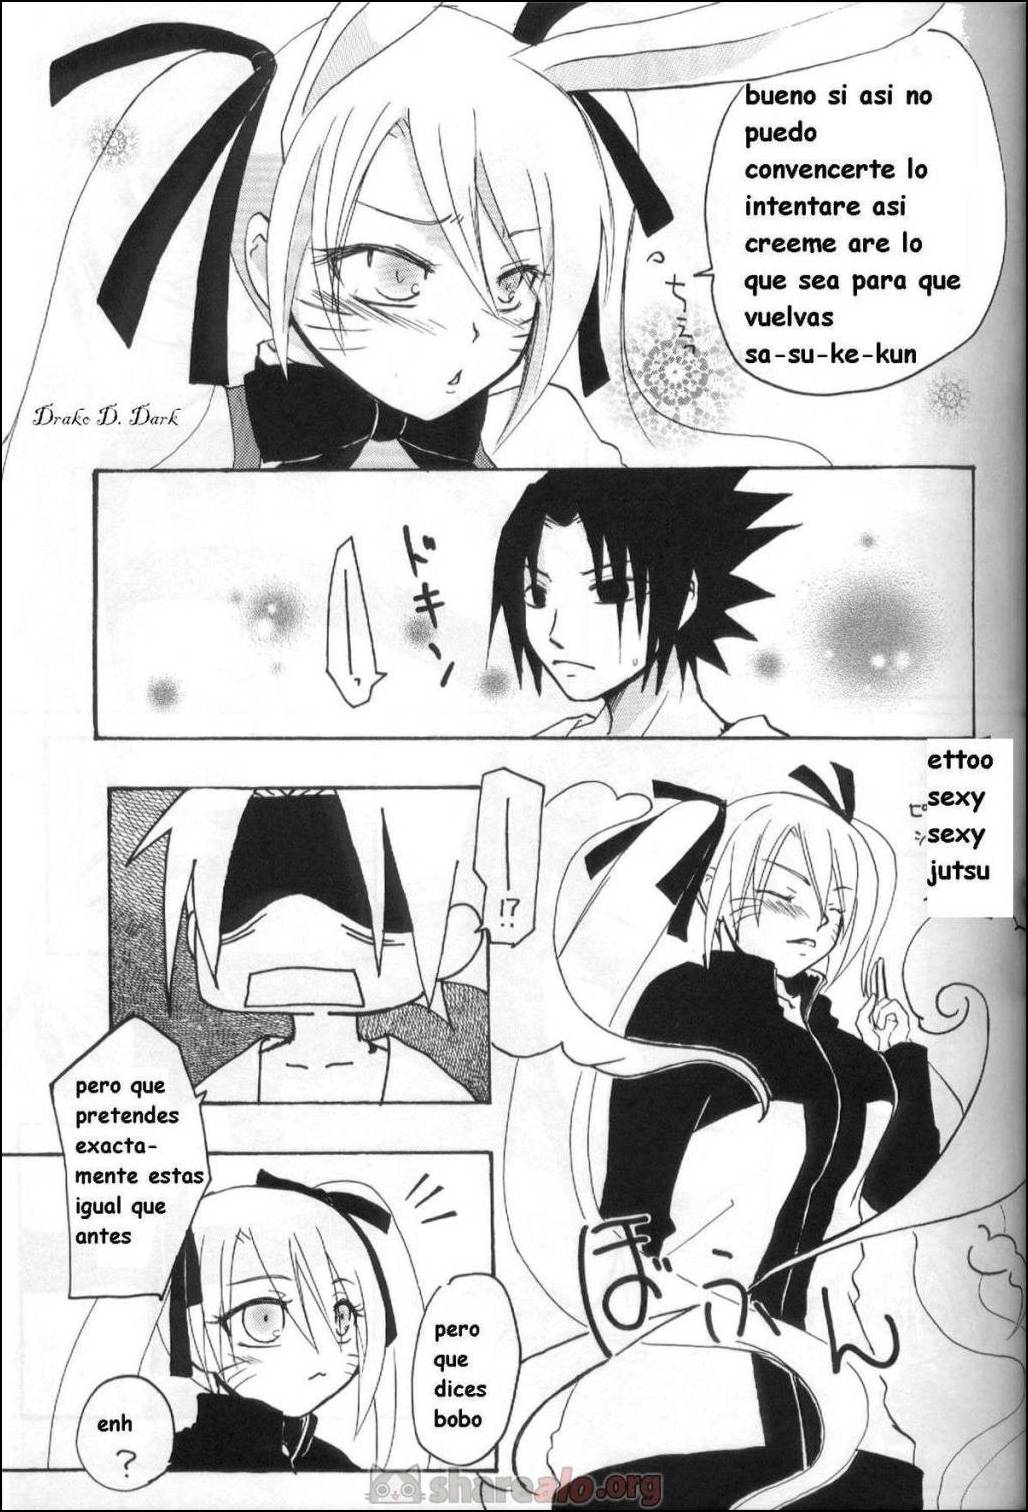 La Persuación de Naruto (Naruko y Sasuke Uchiha Follando) - 4 - Comics Porno - Hentai Manga - Cartoon XXX